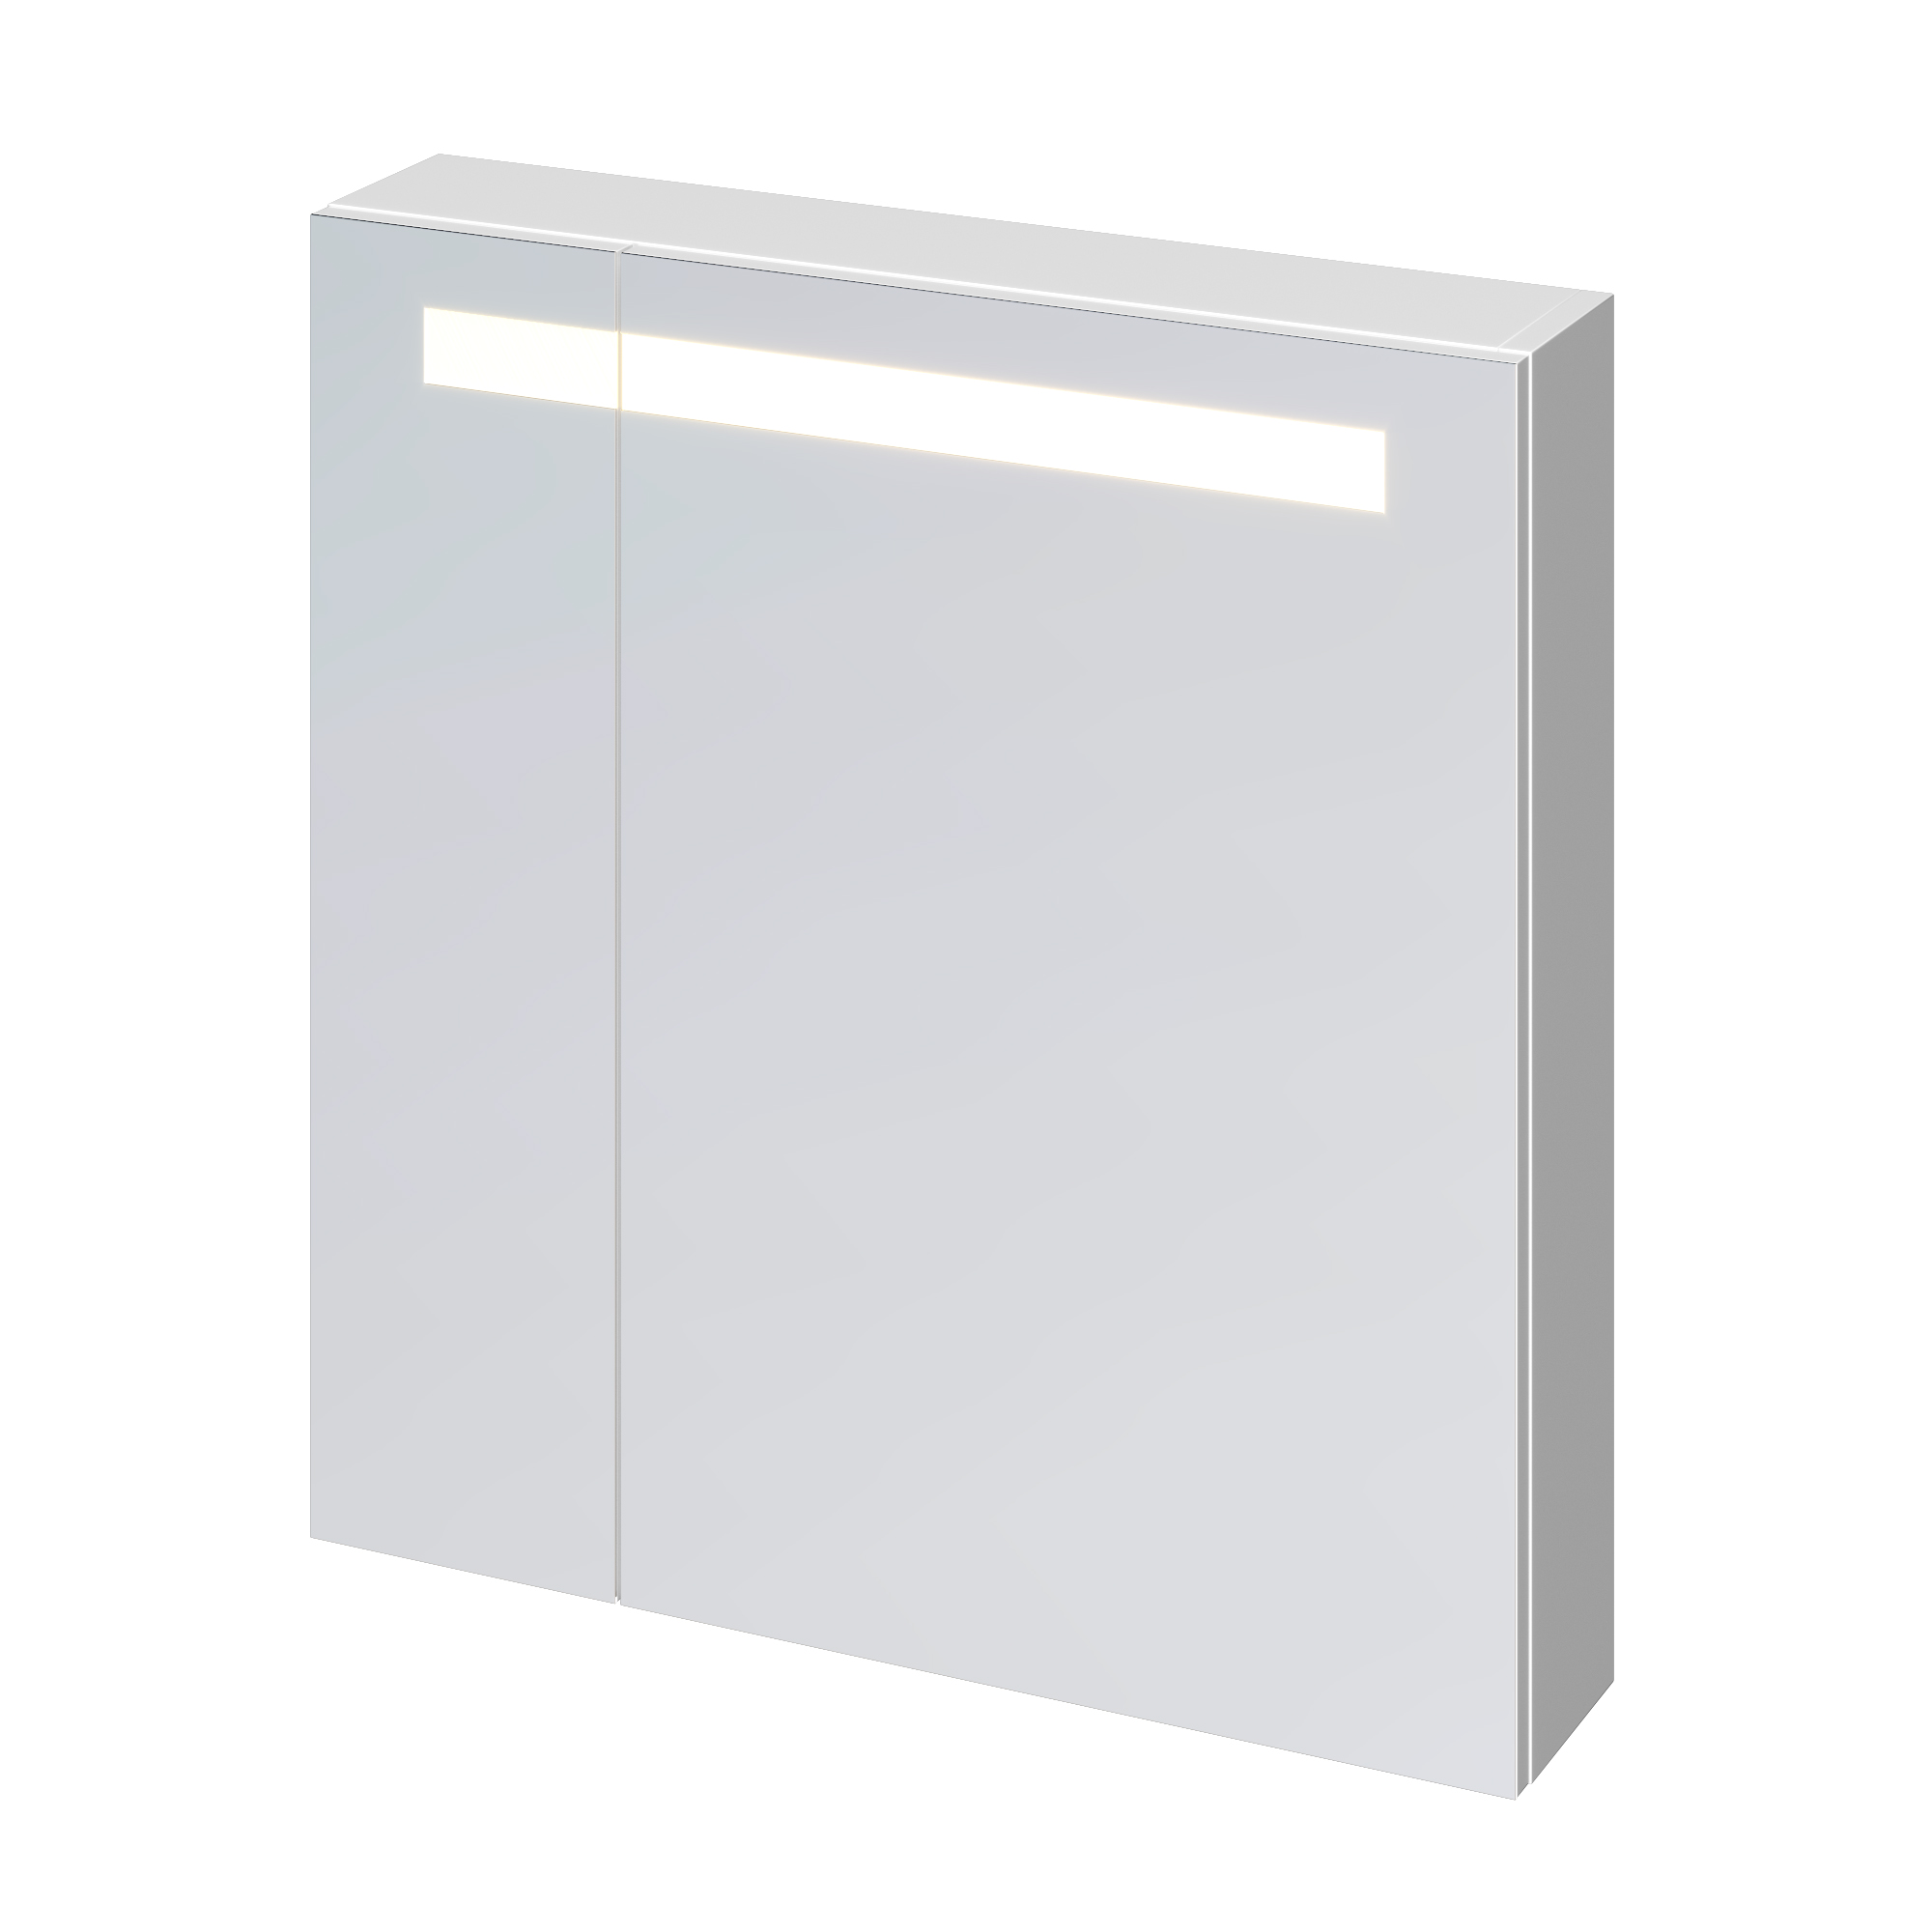 Зеркало-шкаф Cersanit Melar 70 с подсветкой SP-LS-MEL70-Os белый